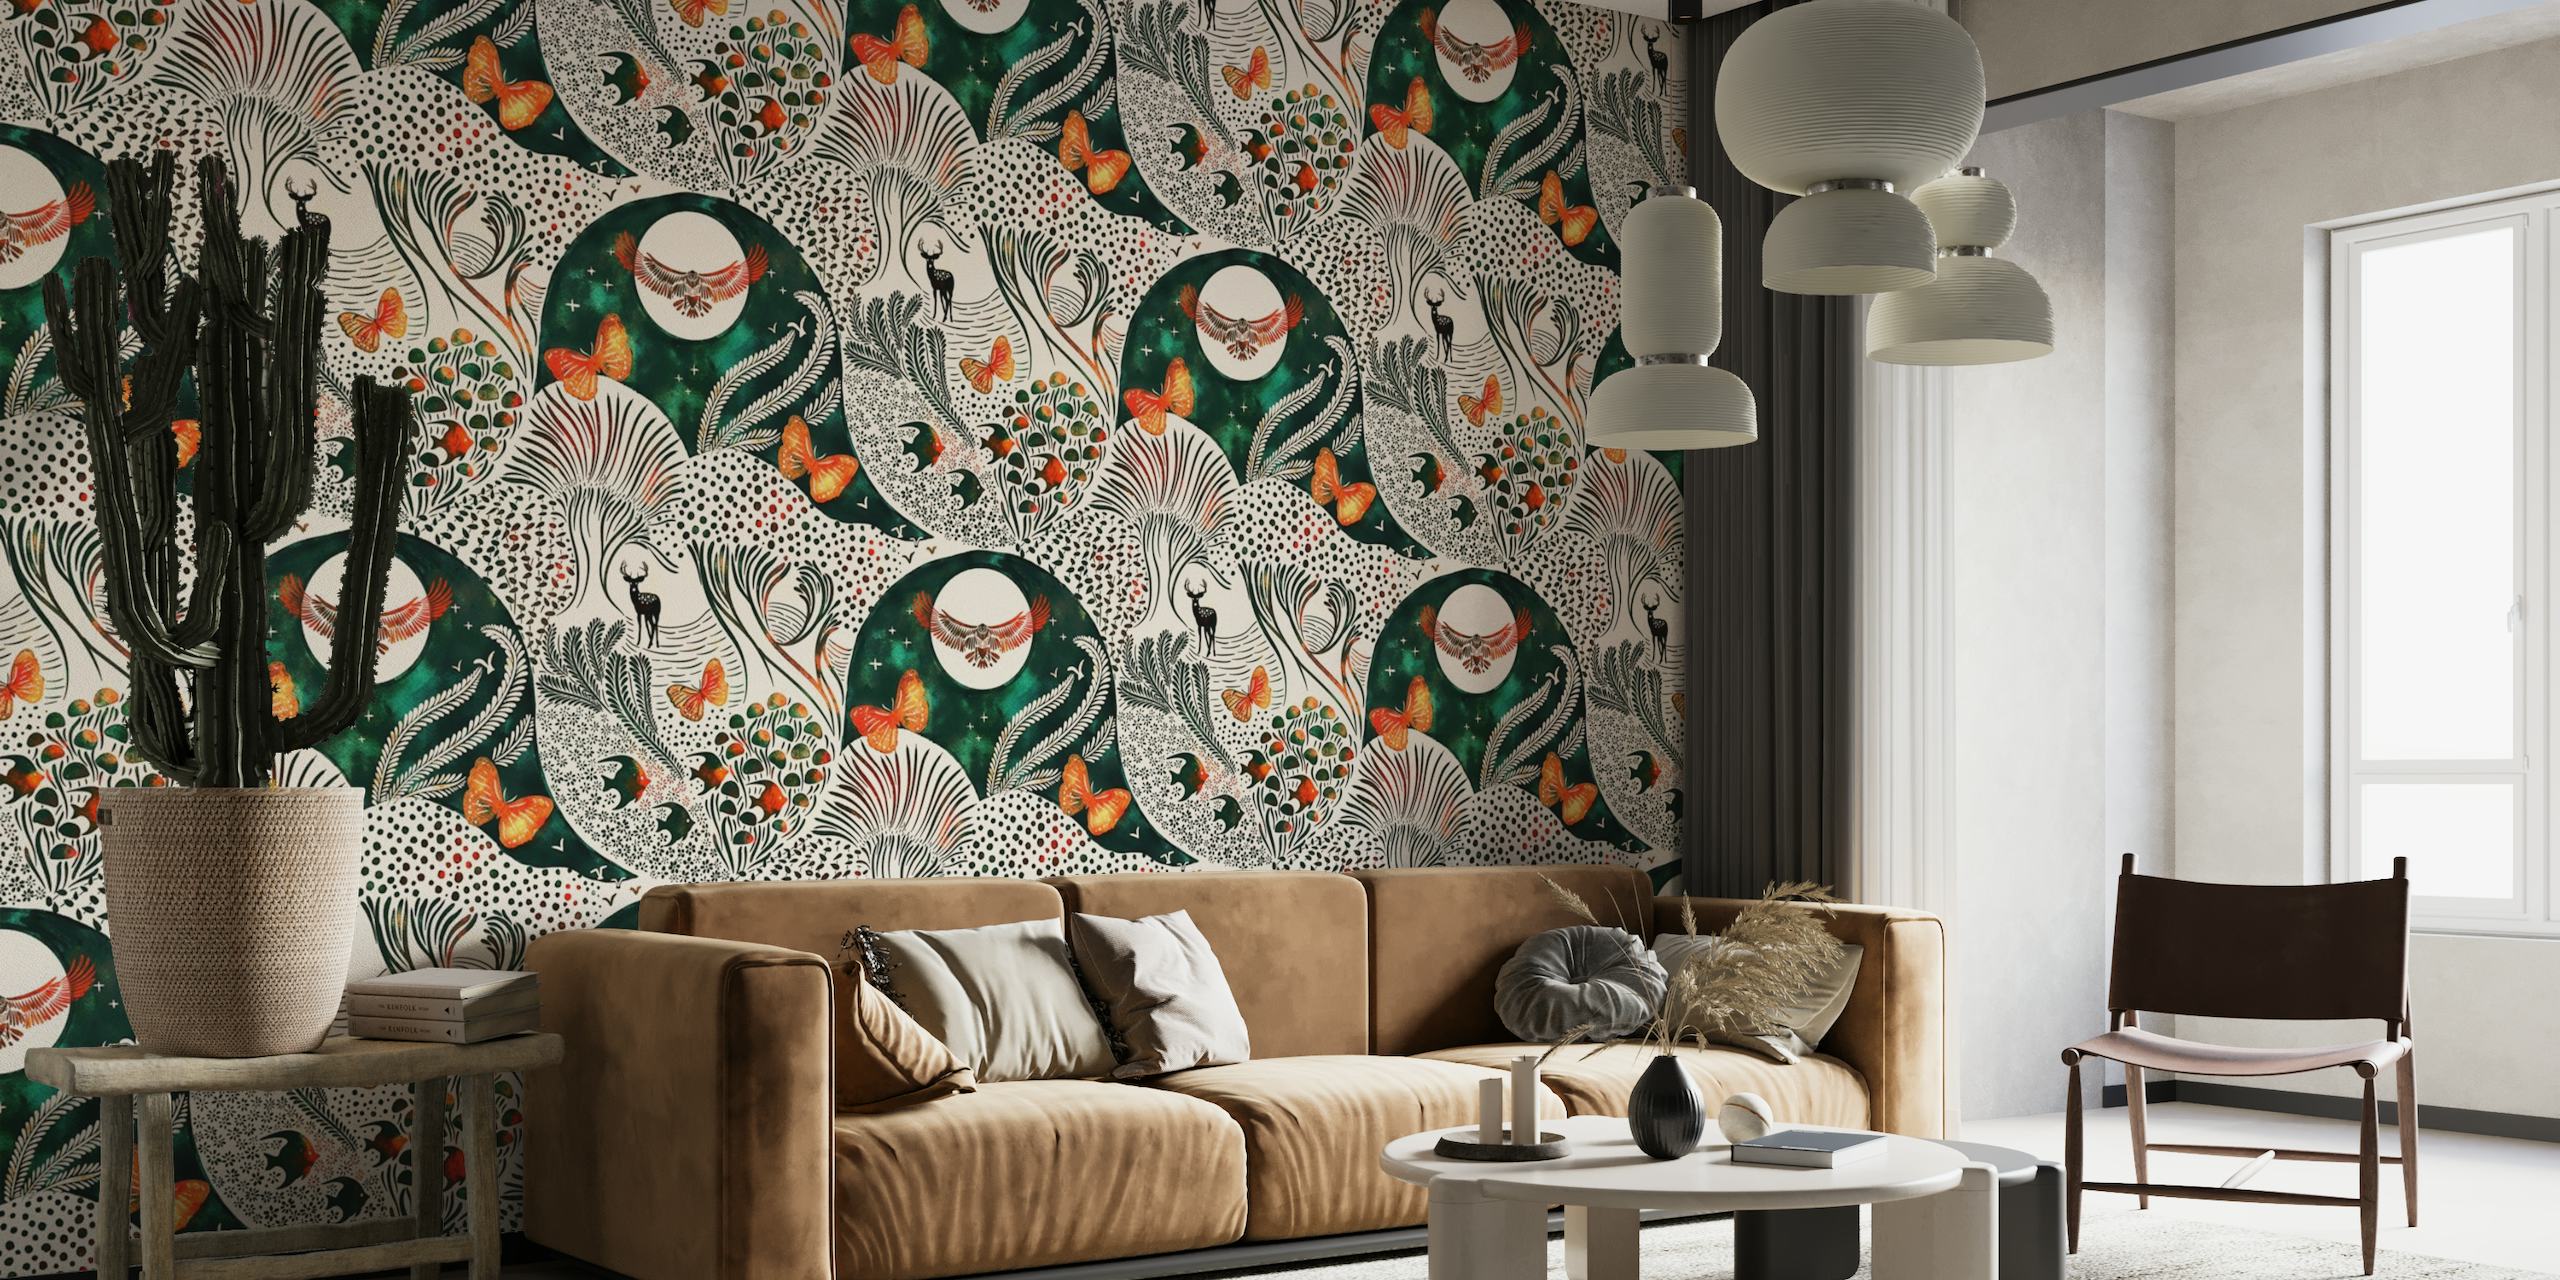 Mural de parede inspirado na fantasia com árvores estilizadas e animais em um padrão hipnotizante